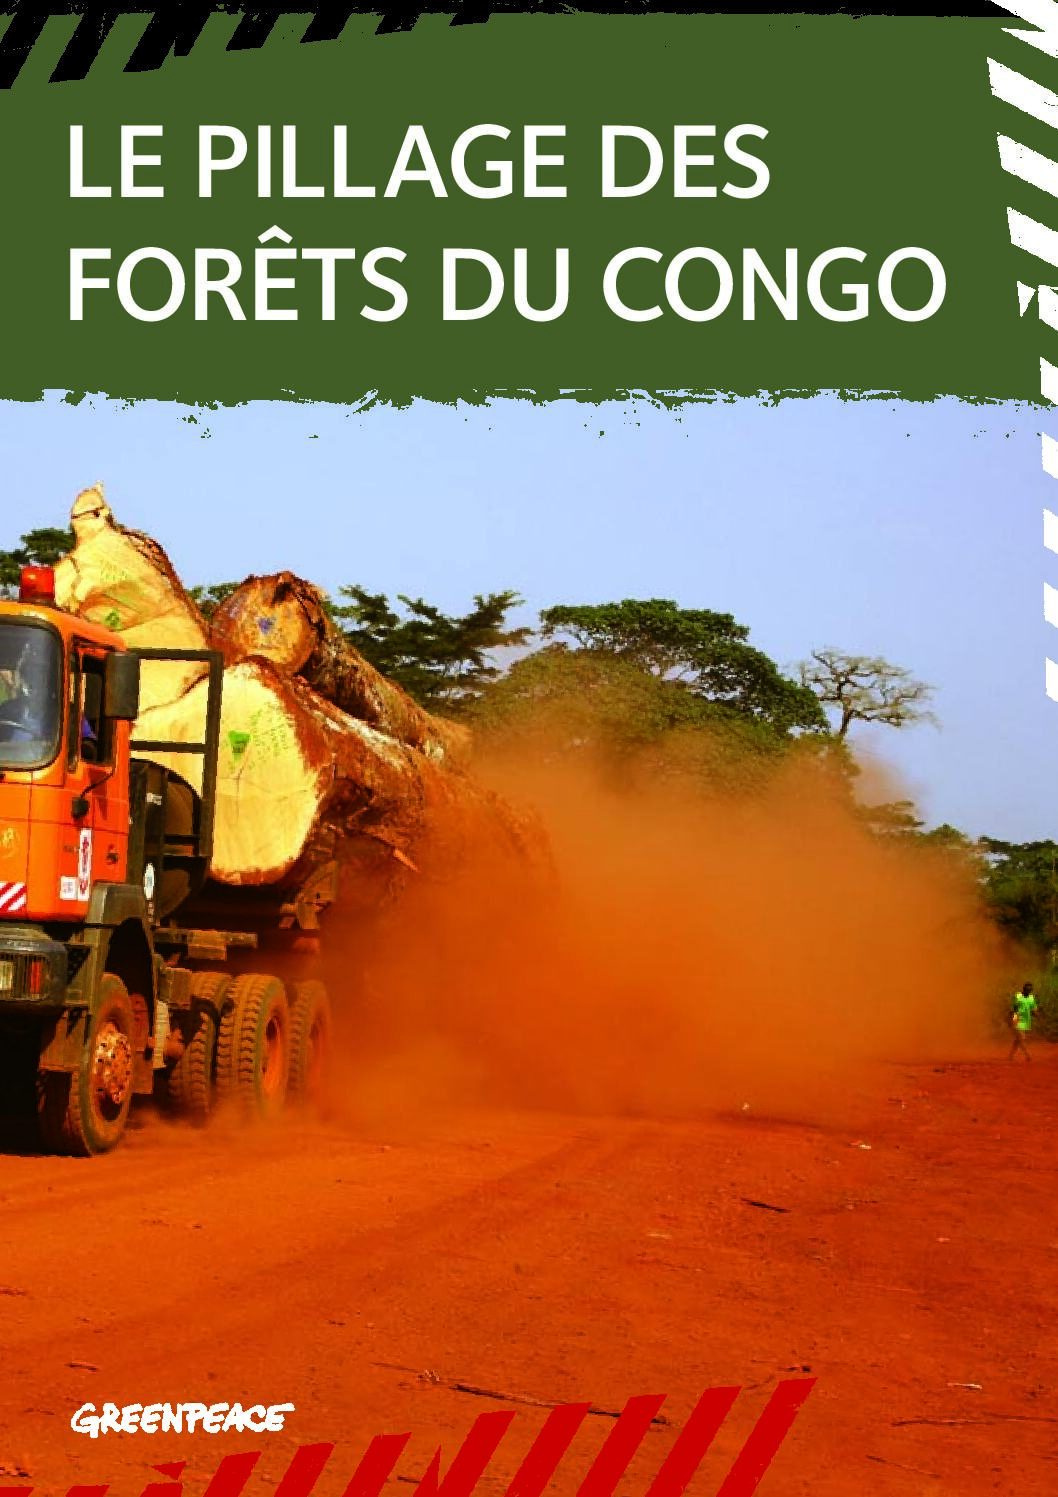 Le pillage des forêts du Congo